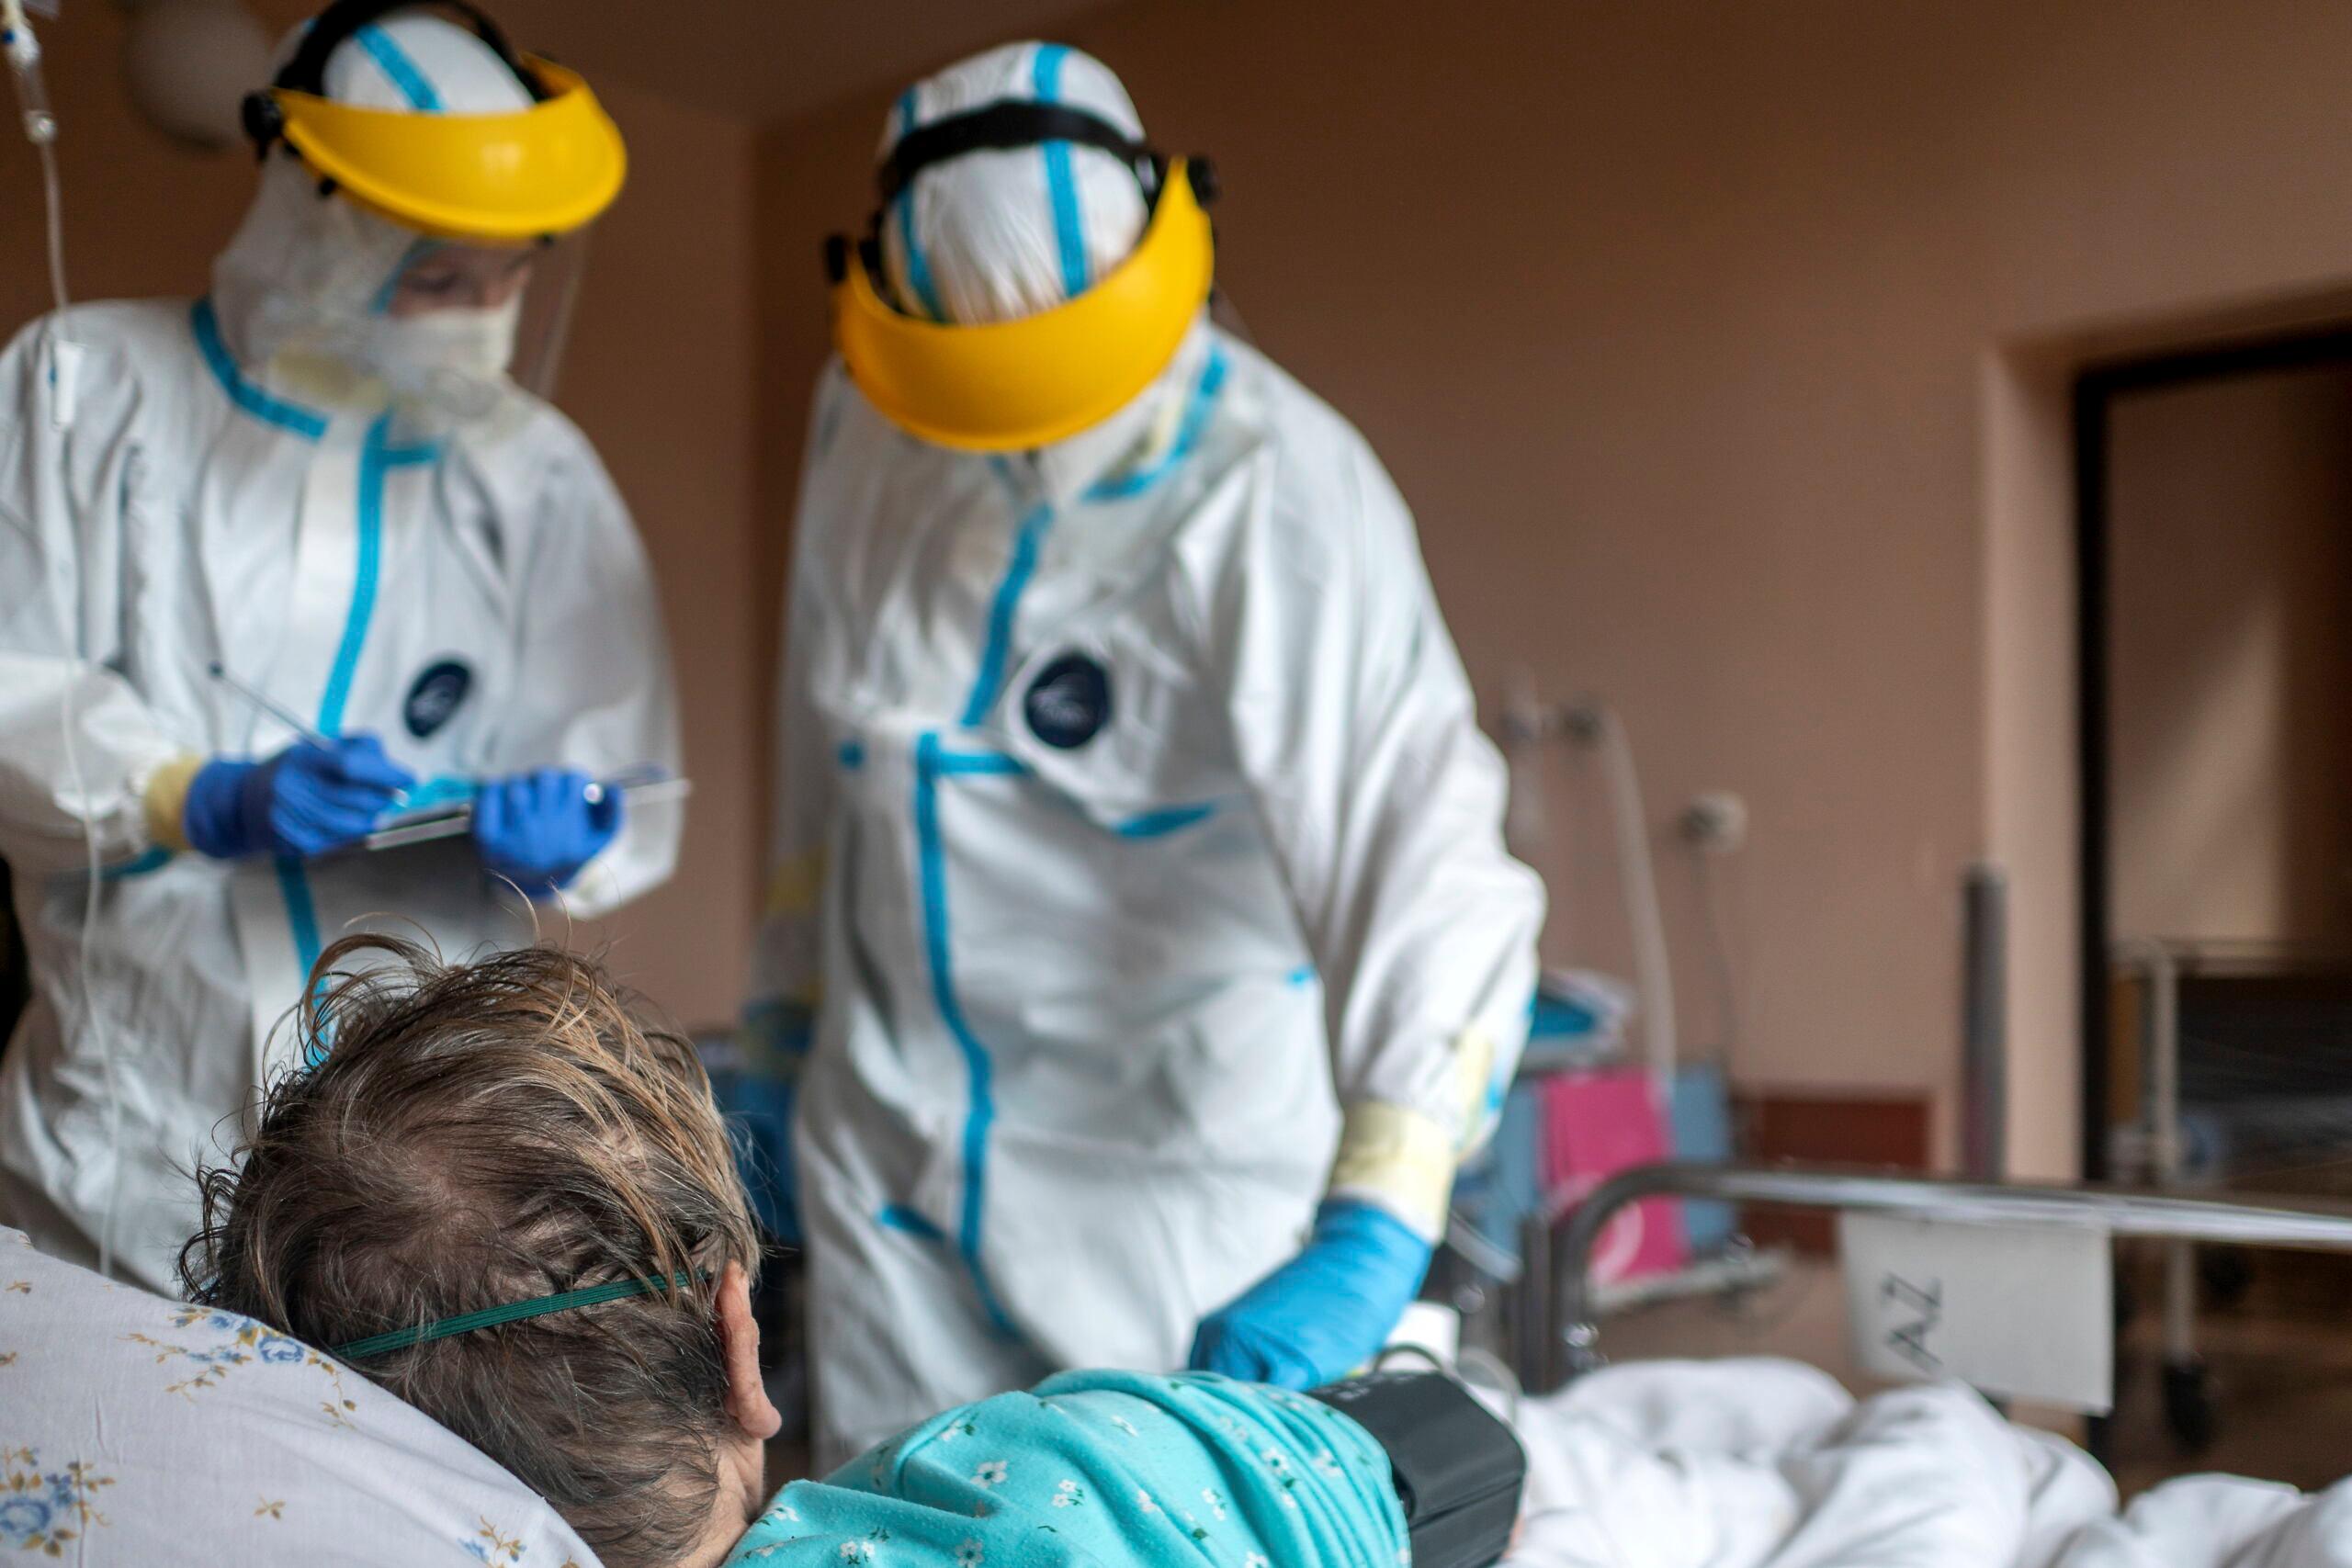 Personel w strojach ochronnych zajmuje się pacjentem na oddziale covidowym szpitala miejskiego w Gliwicach